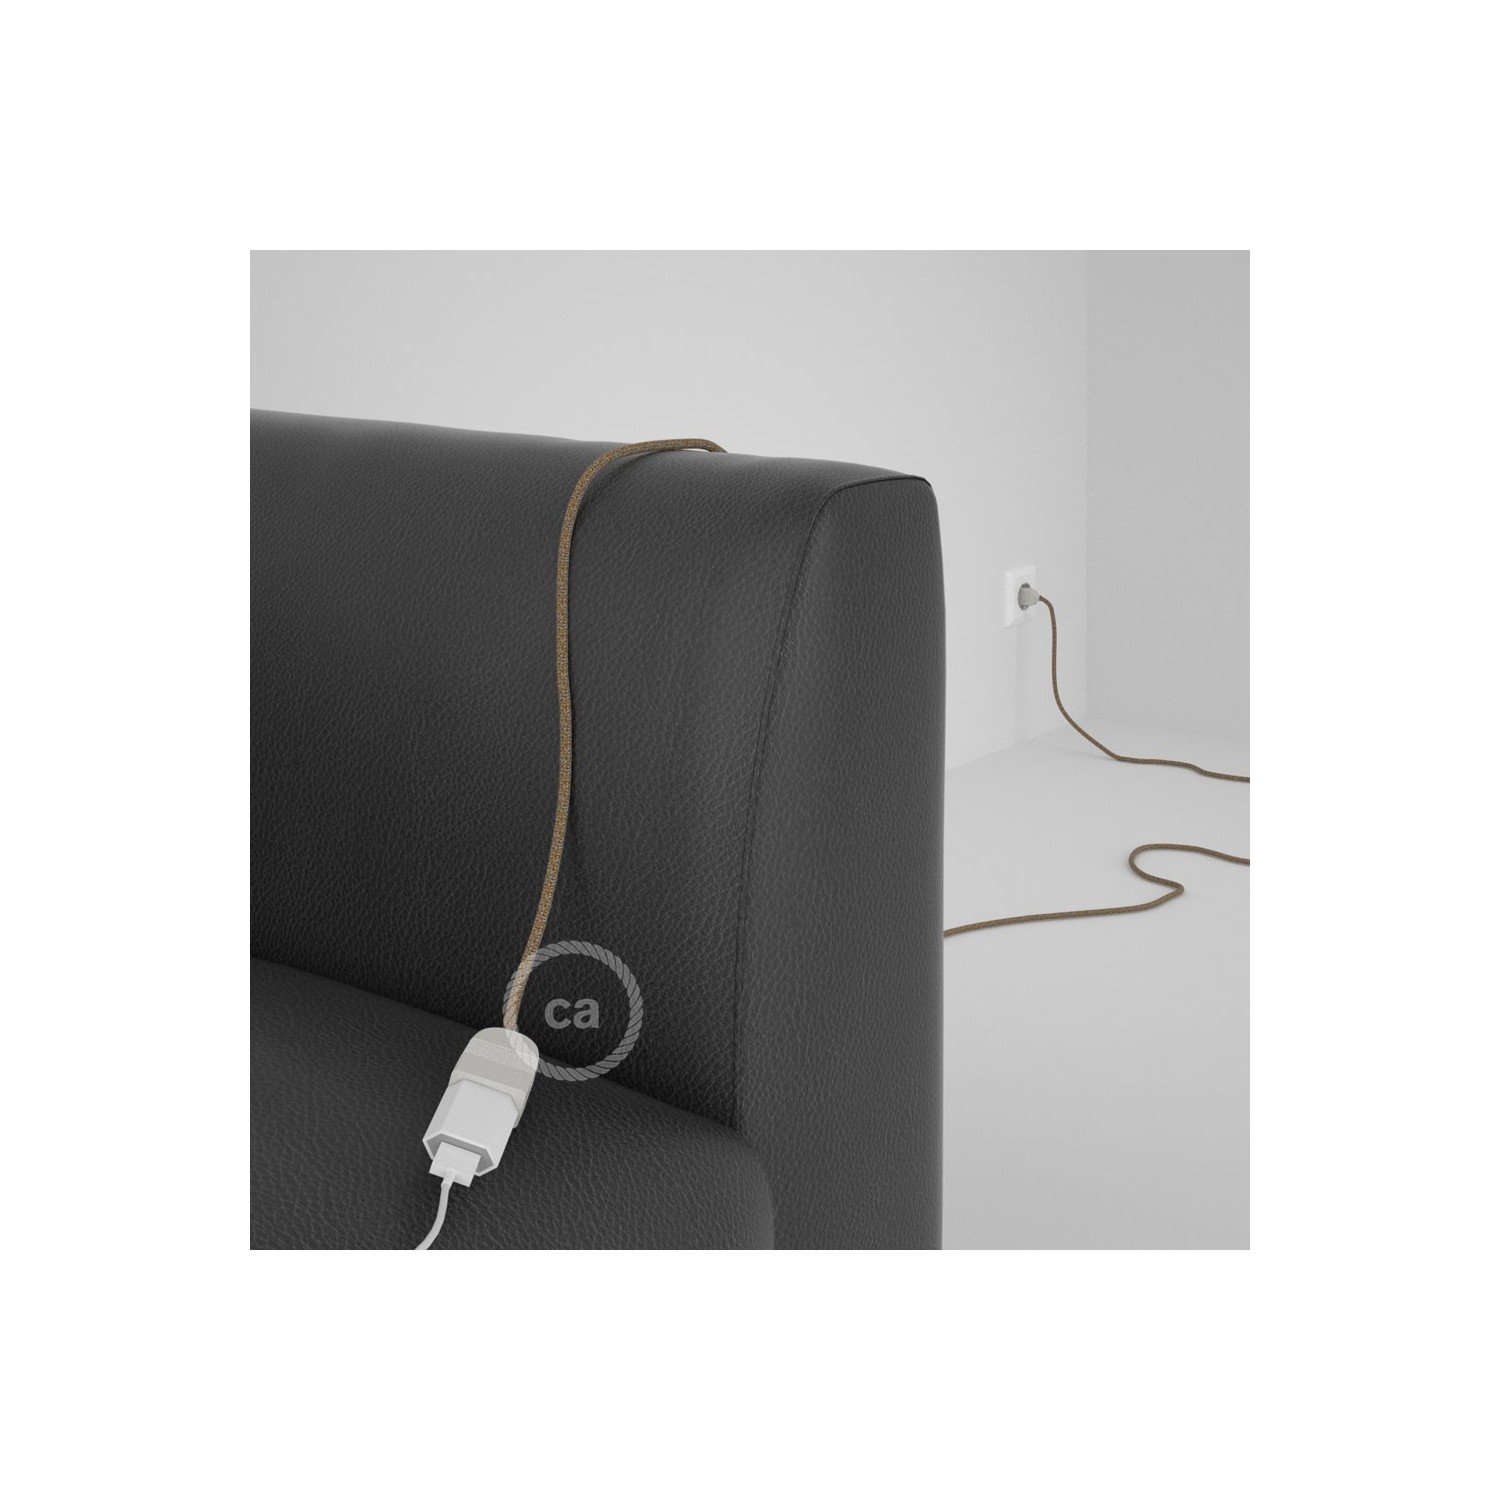 Rallonge électrique avec câble textile RS82 Coton et Lin Naturel Marron 2P 10A Made in Italy.